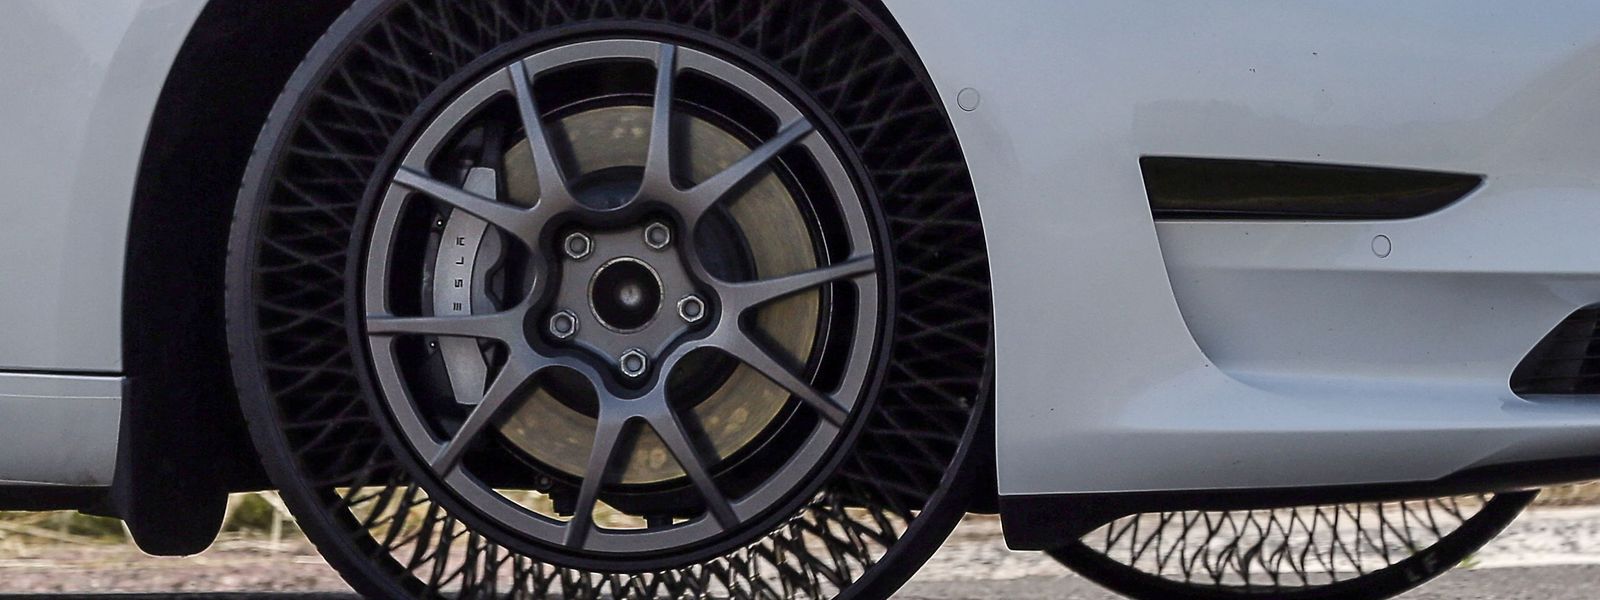 Ces pneus ont été testés sur 120.000 kilomètres, jusqu'à 160 km/h, dans la chaleur comme dans la neige, sans dommages majeurs